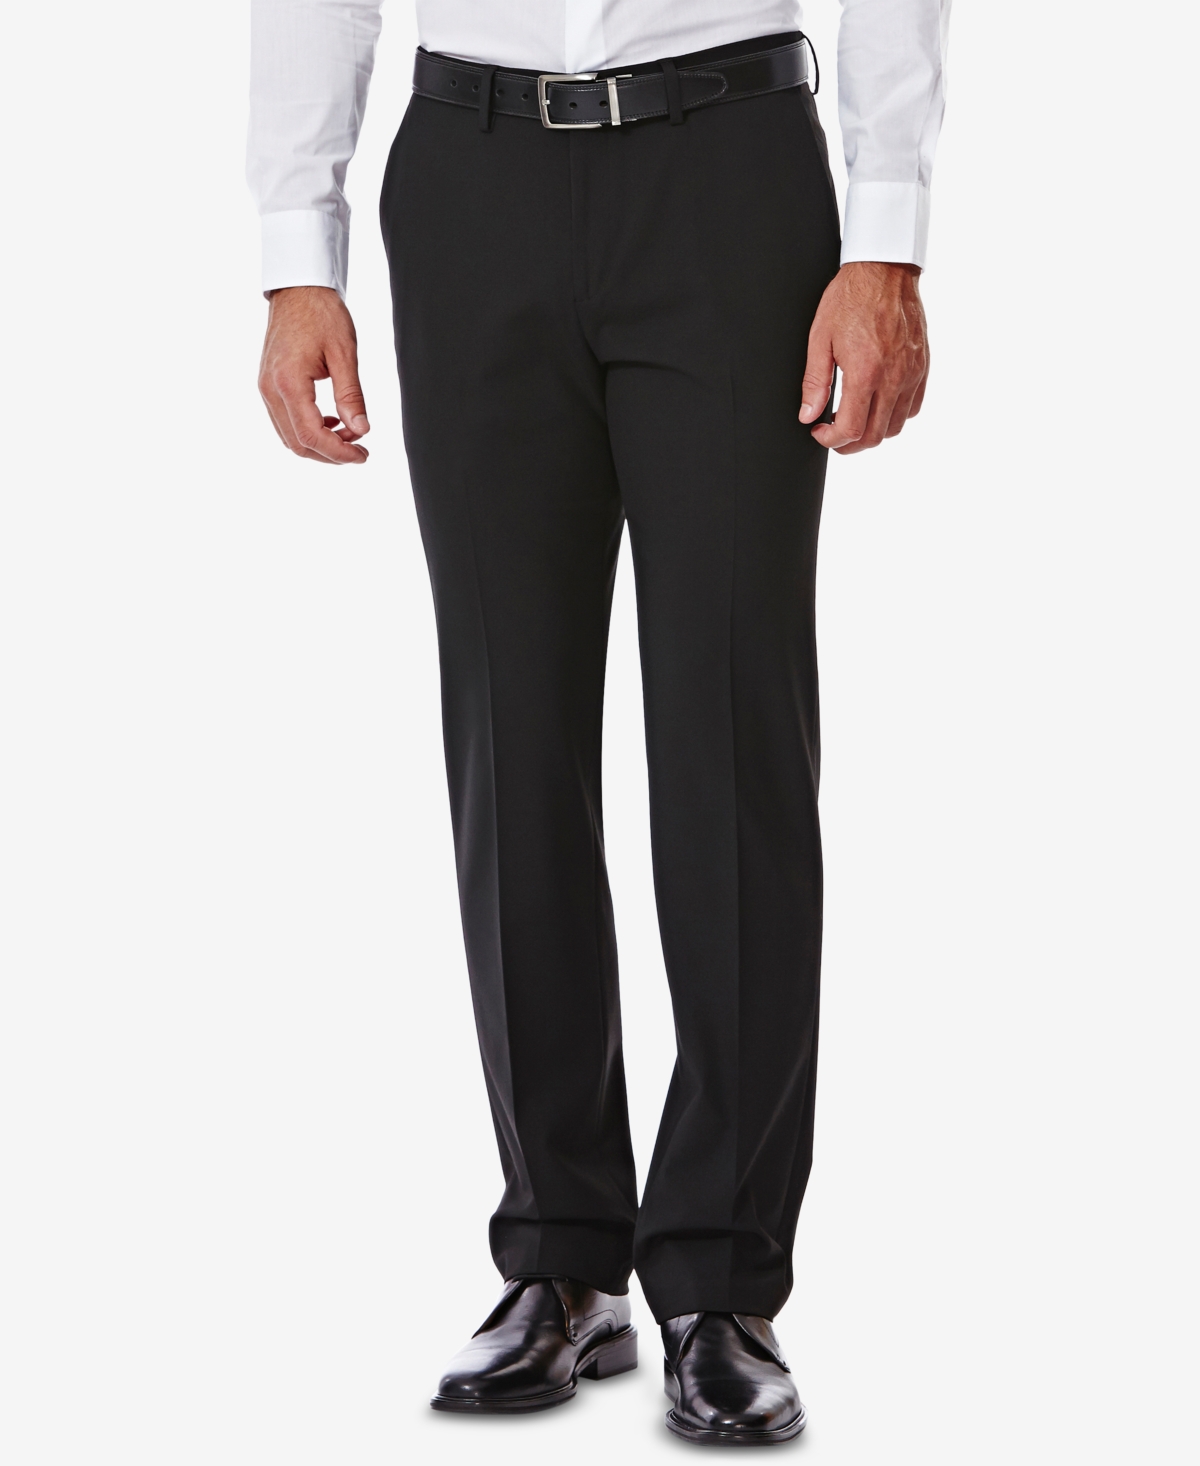 J.m. Haggar Men's 4 Way Stretch Slim Fit Flat Front Suit Pant - Black